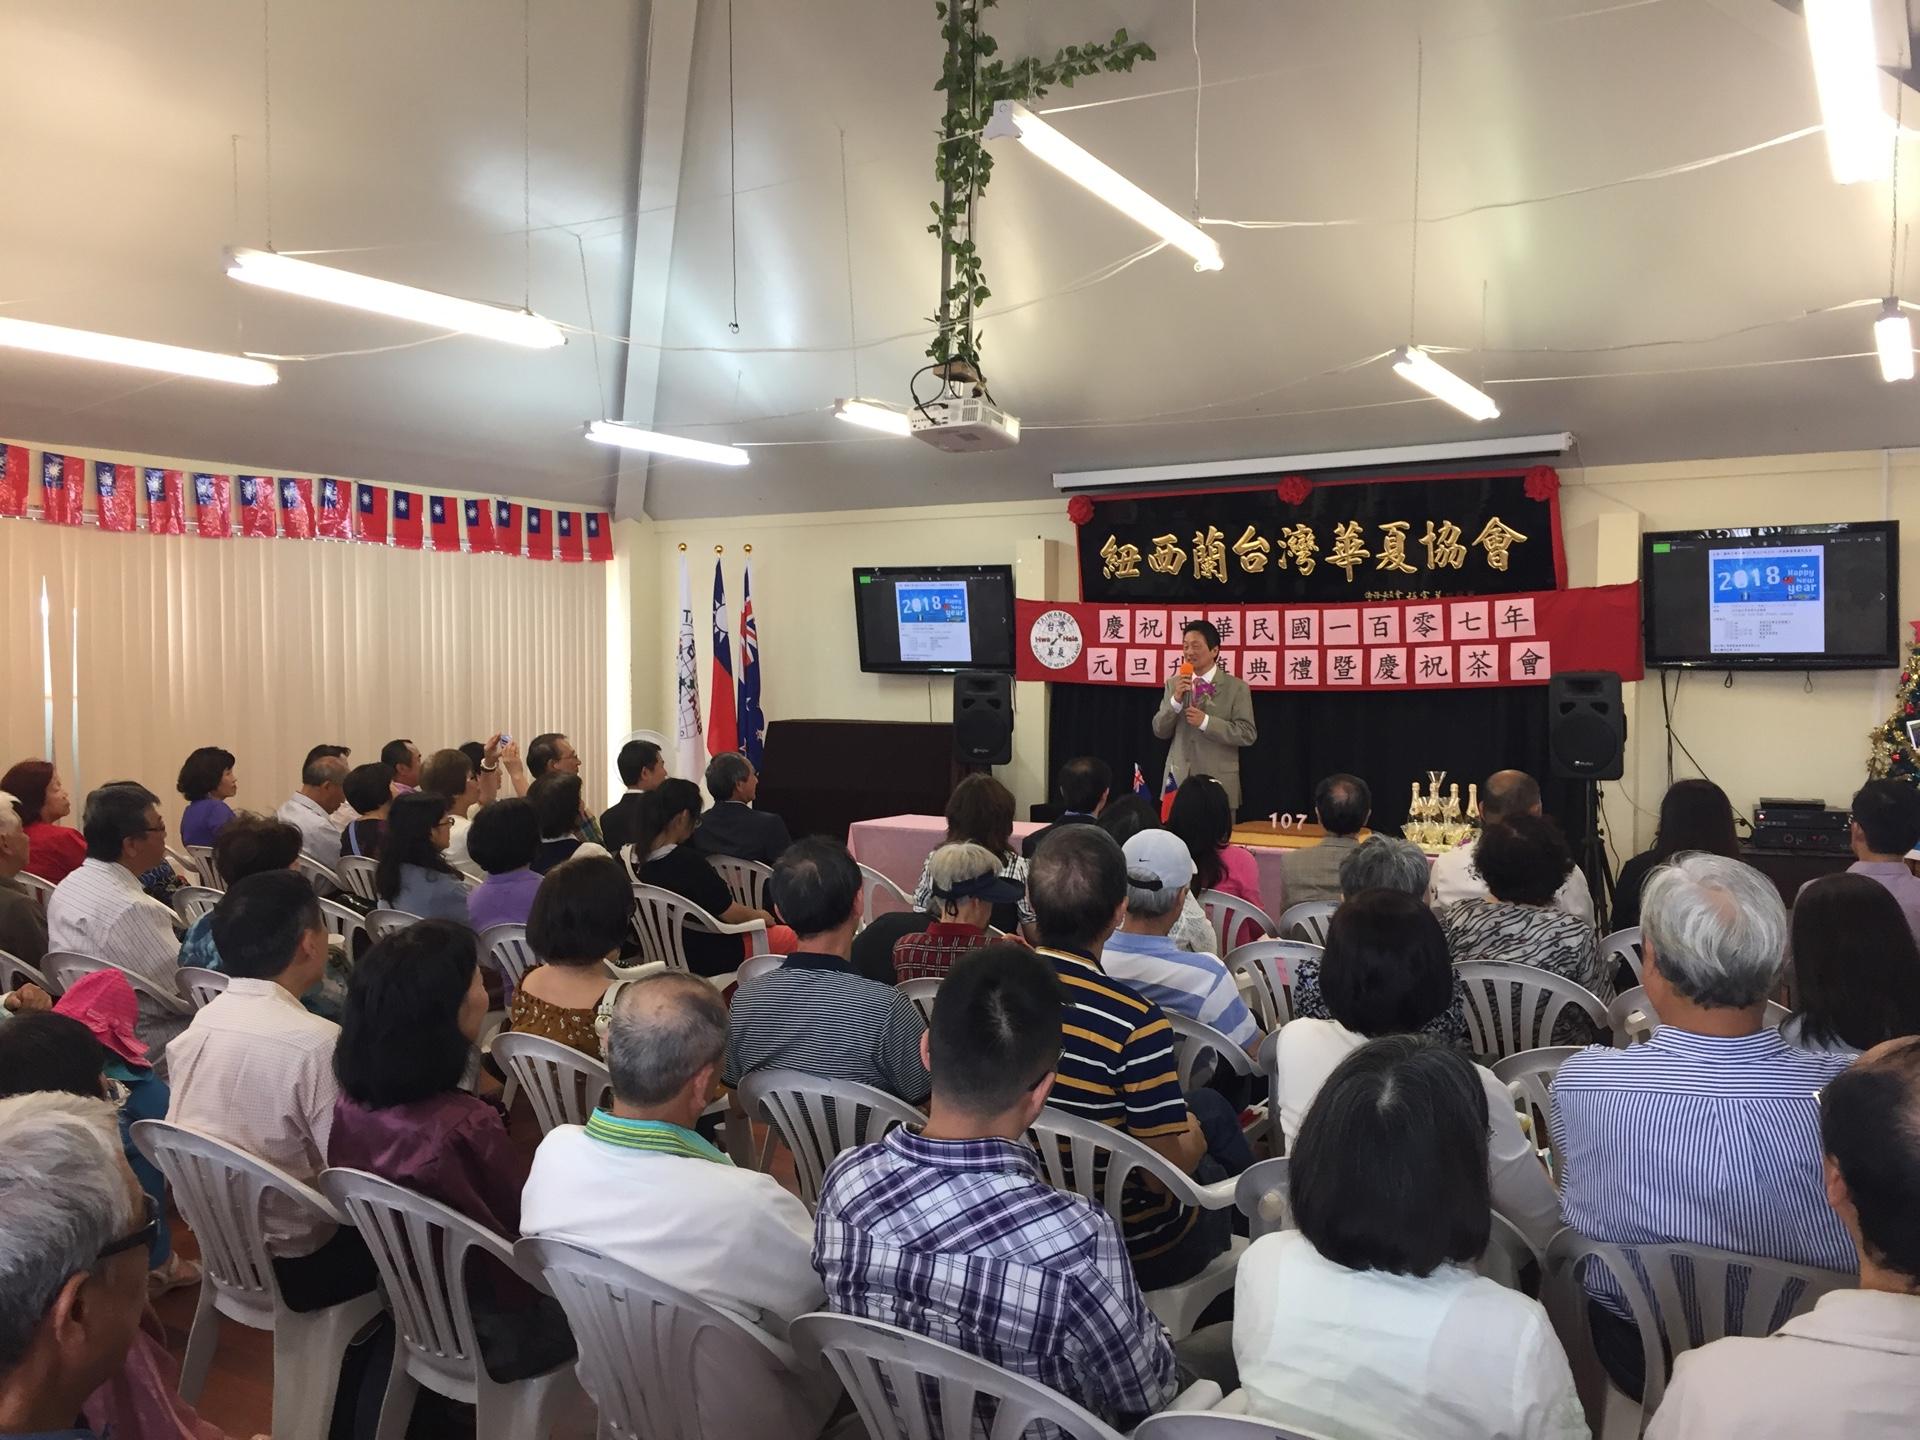 紐西蘭奧克蘭僑界舉行慶祝中華民國107年元旦升旗典禮暨慶祝茶會